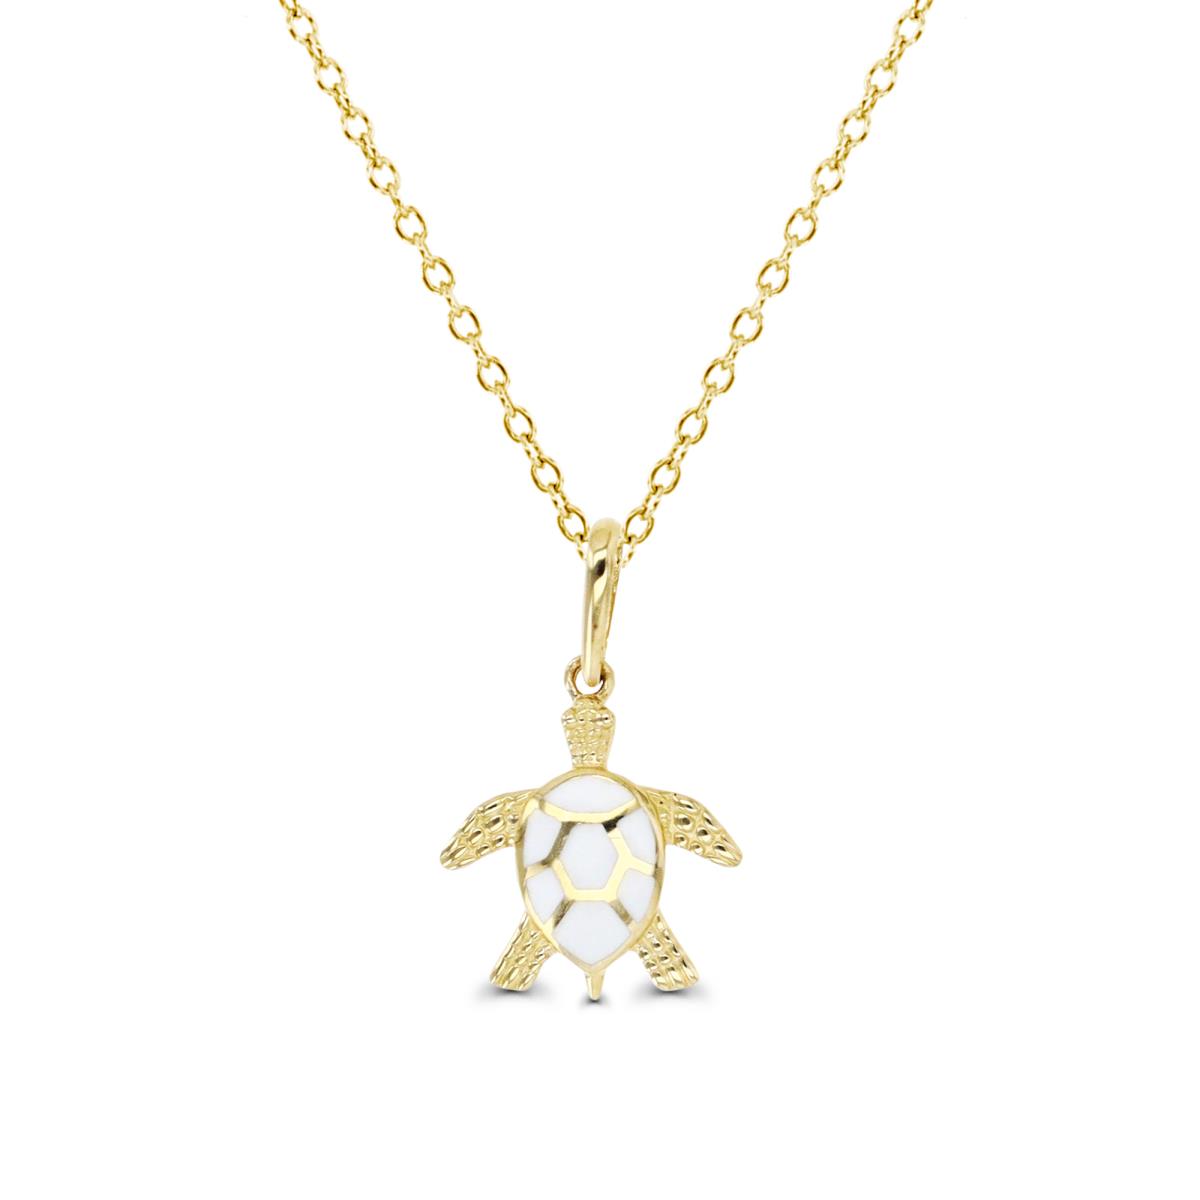 10K Yellow Gold & White Enamel Turtle 16+2" Necklace